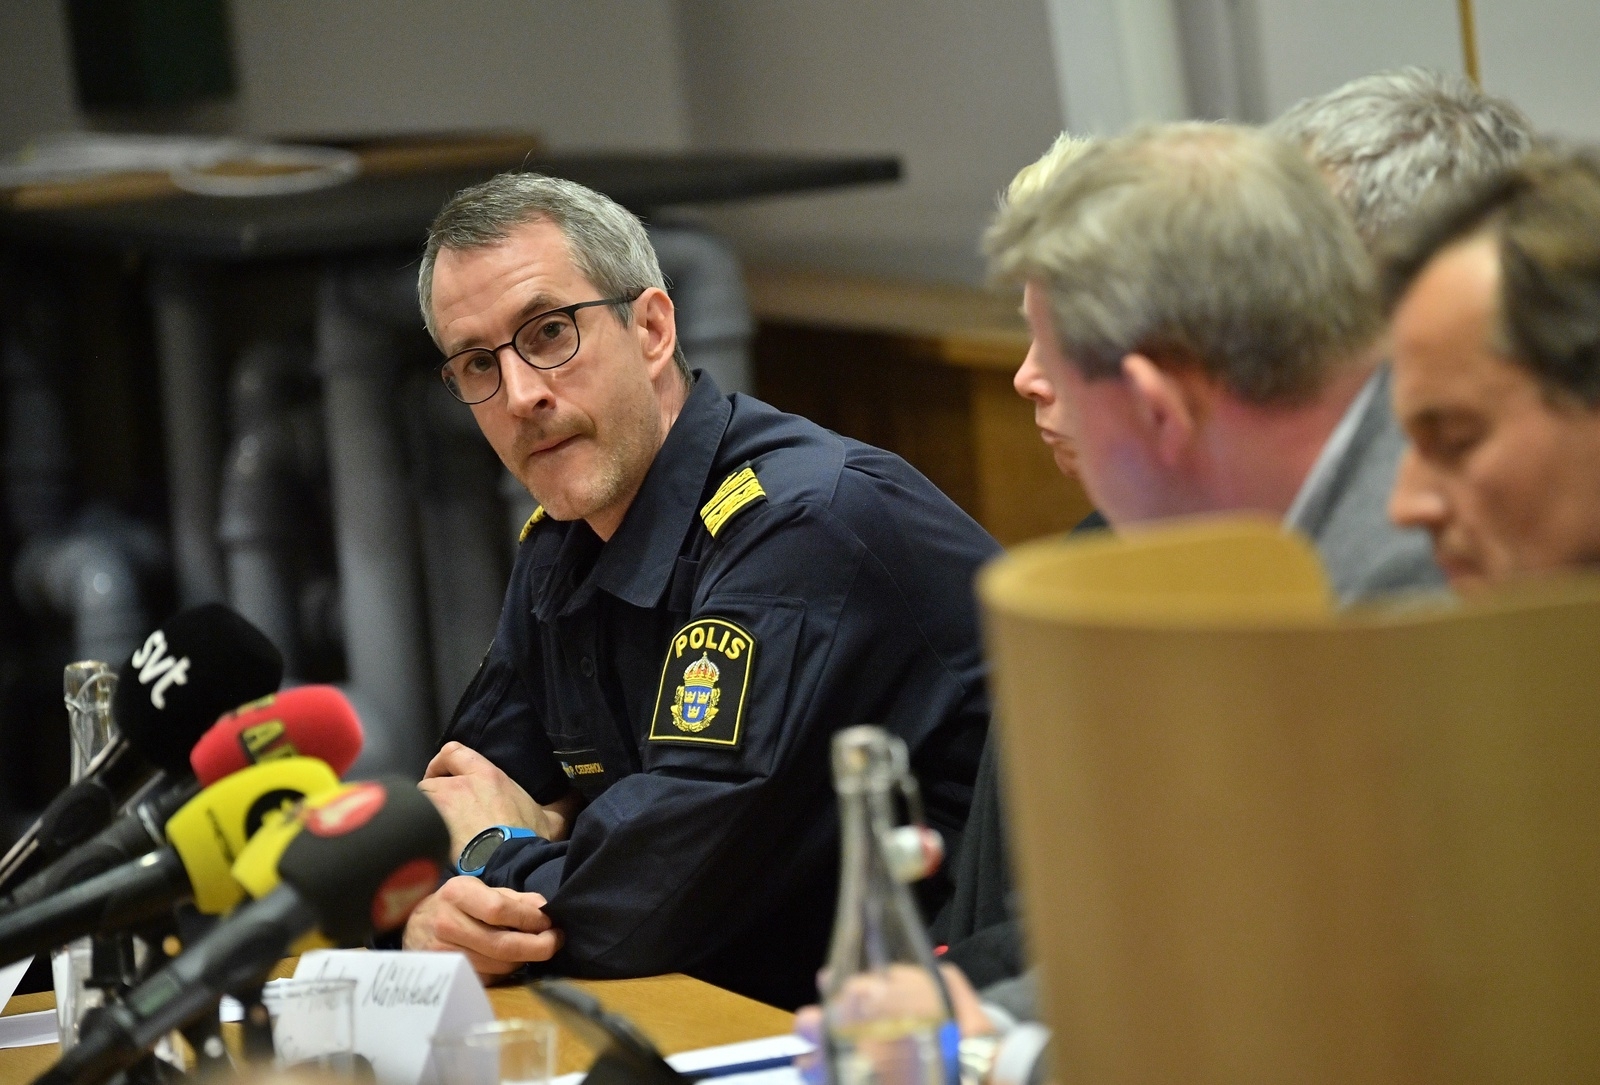 Pär Cederholm, polisens lokalområdeschef i Hässleholm, uttalar sig under en presskonferens efter en explosion på Hässleholms Tekniska skola.
Foto: Johan Nilsson / TT